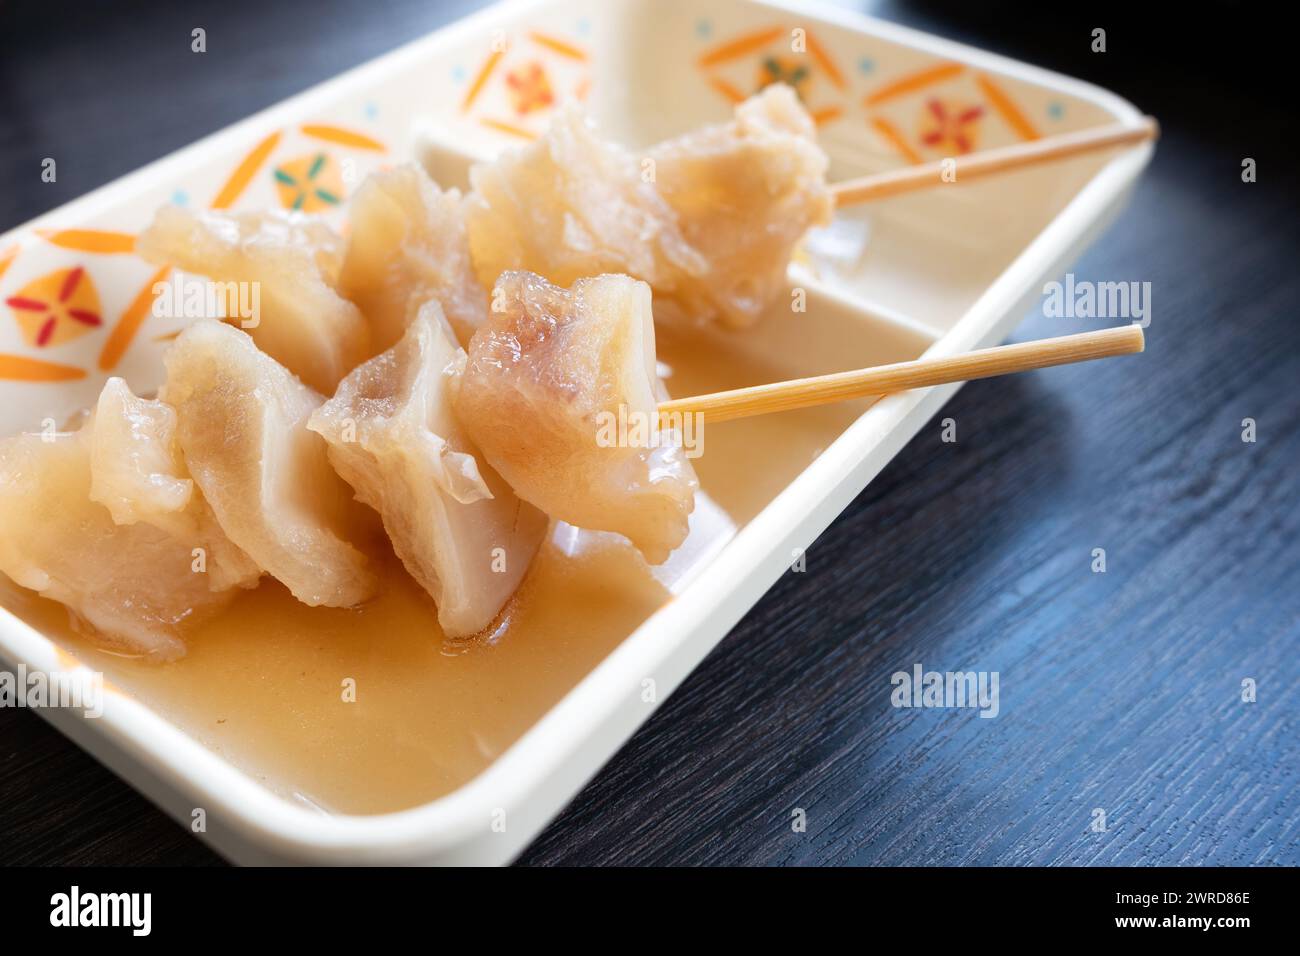 Brochette de tendon de bœuf Gyusuji oden - une nourriture japonaise populaire Banque D'Images